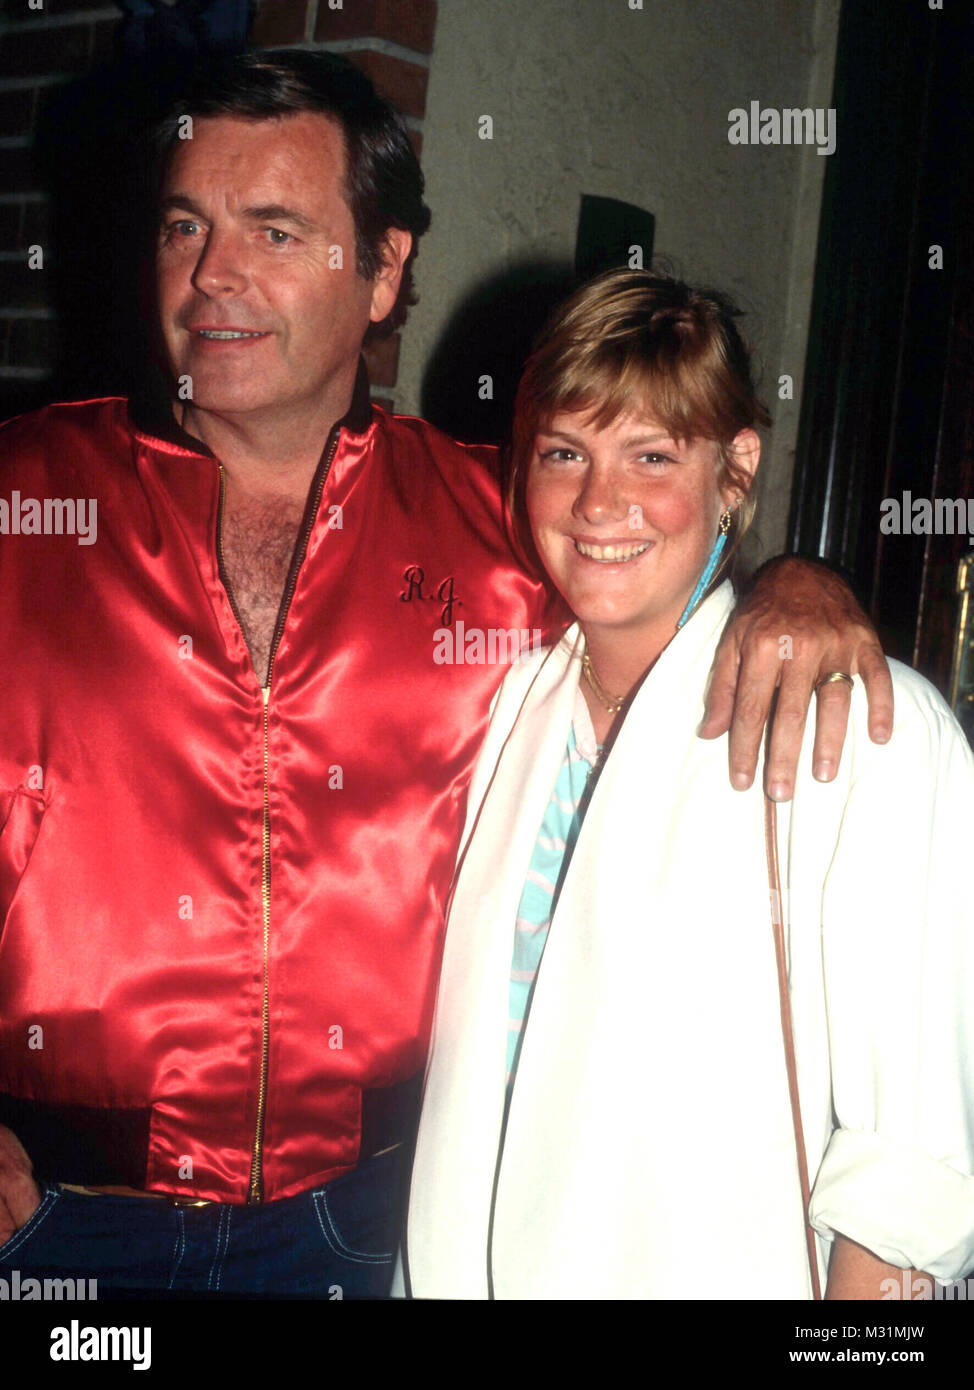 LOS ANGELES, Ca - 30. Juni: Schauspieler Robert Wagner und Tochter Katie Wagner am 30. Juni 1982 in Beverly Hills, Kalifornien. Foto von Barry King/Alamy Stock Foto Stockfoto